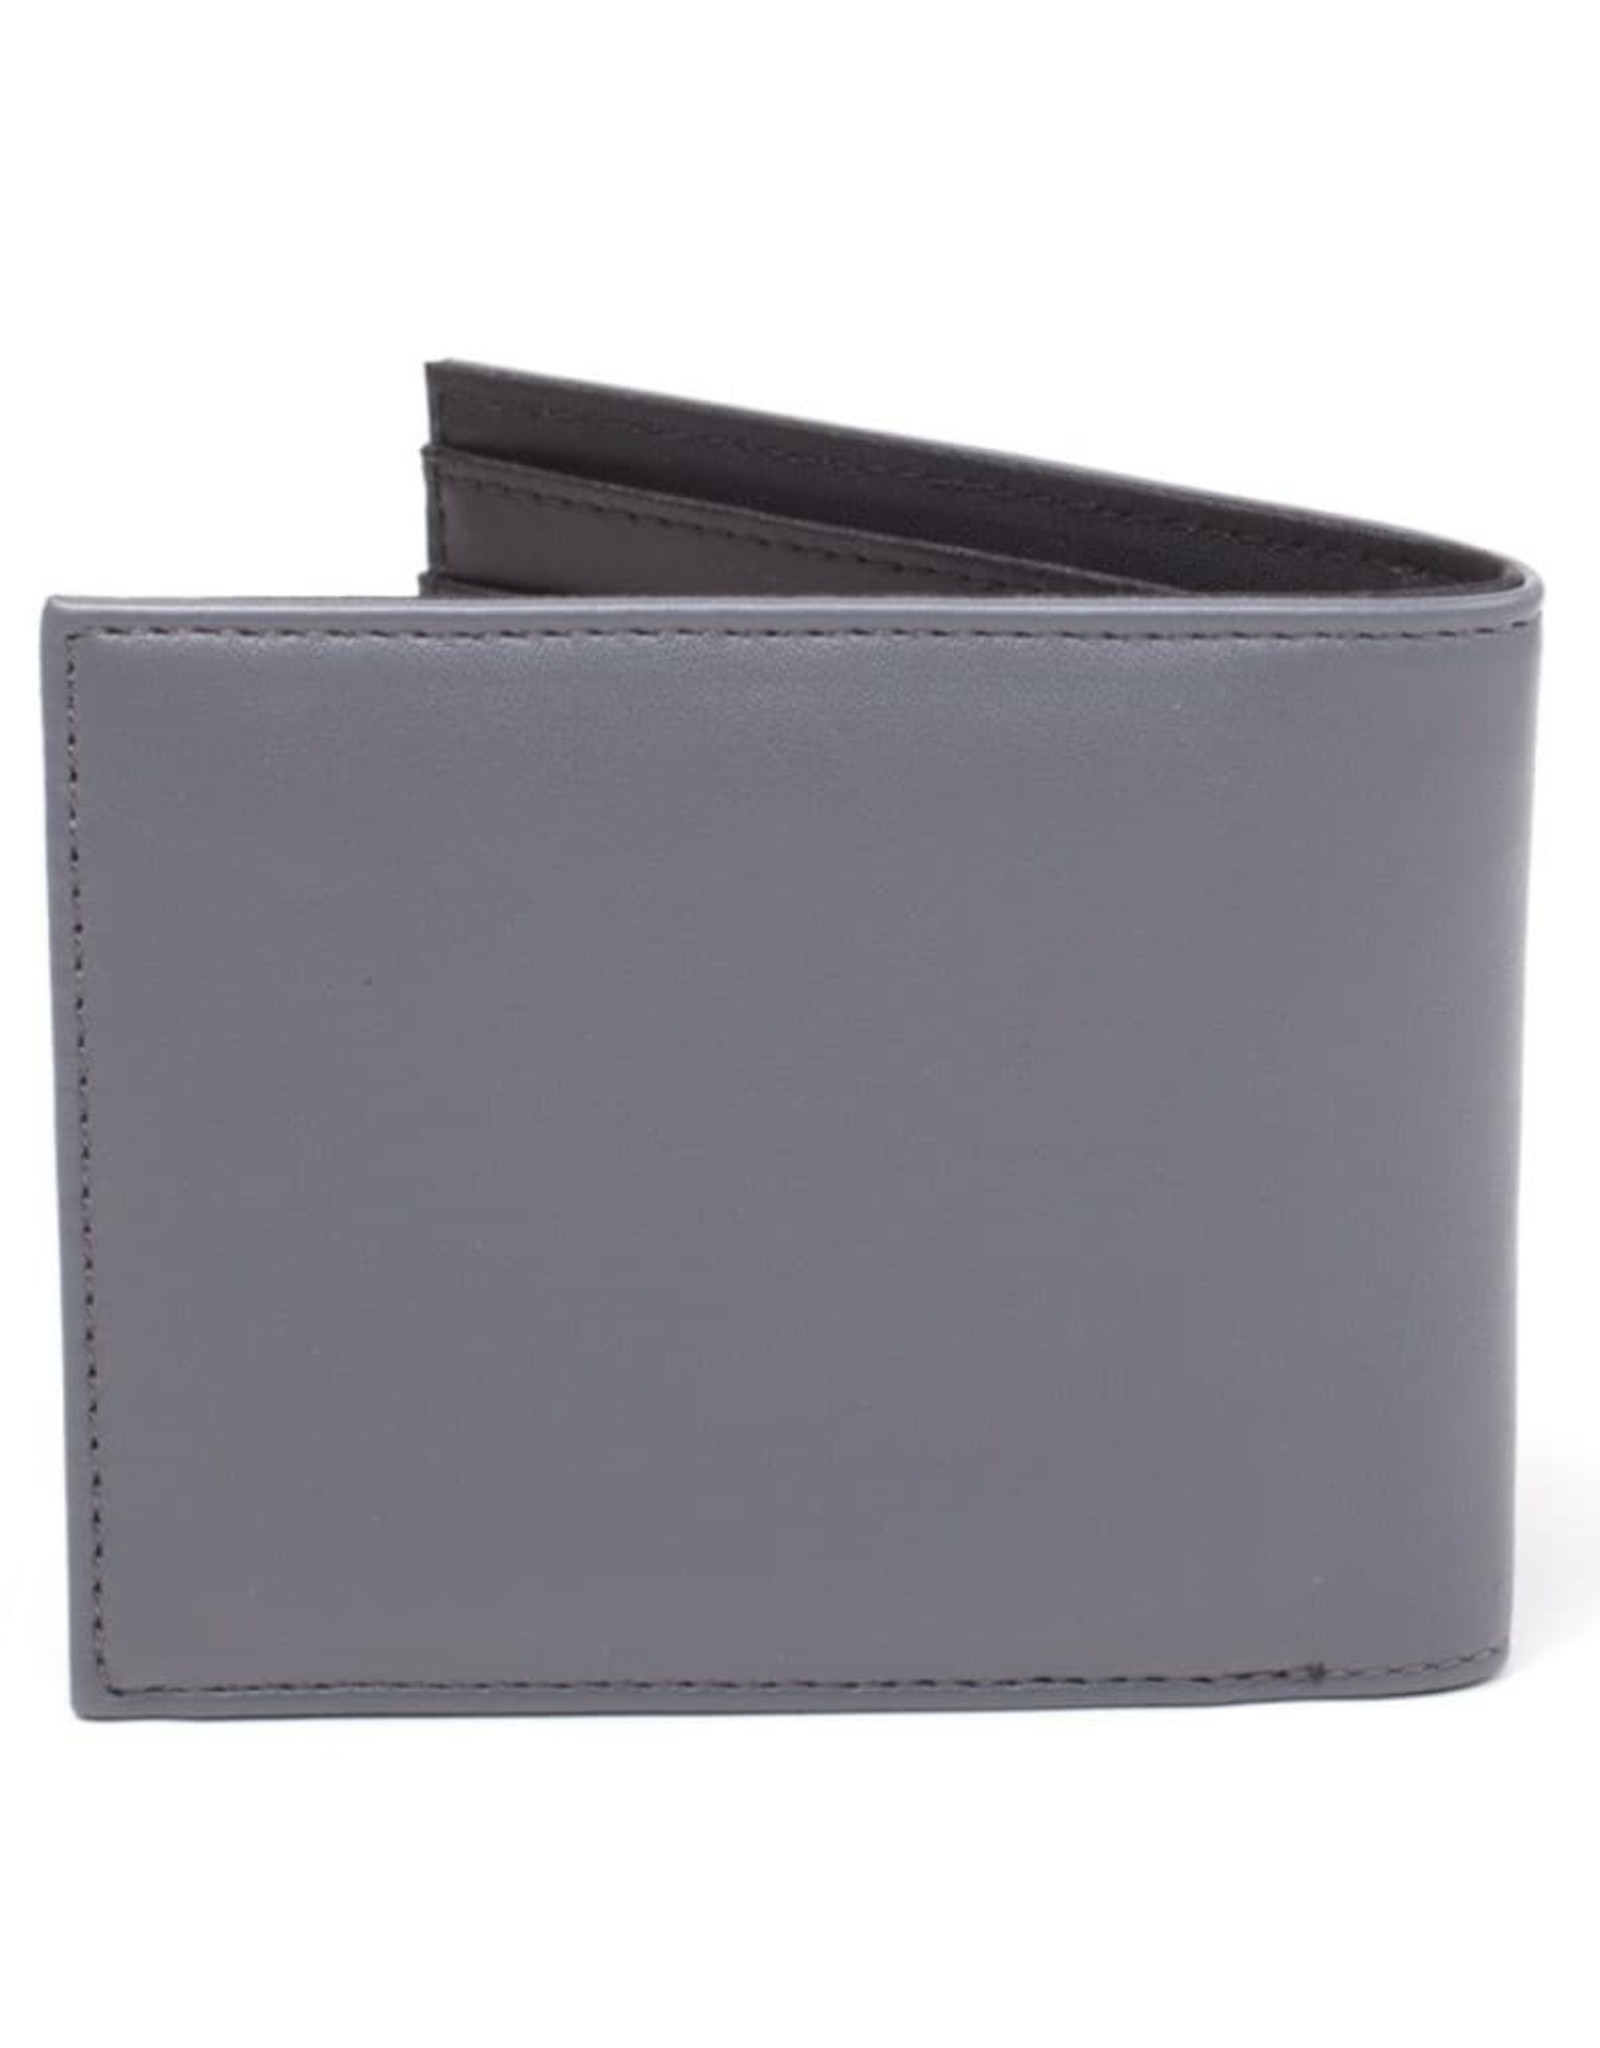 Nintendo Merchandise wallet - Nintendo Cartridge wallet